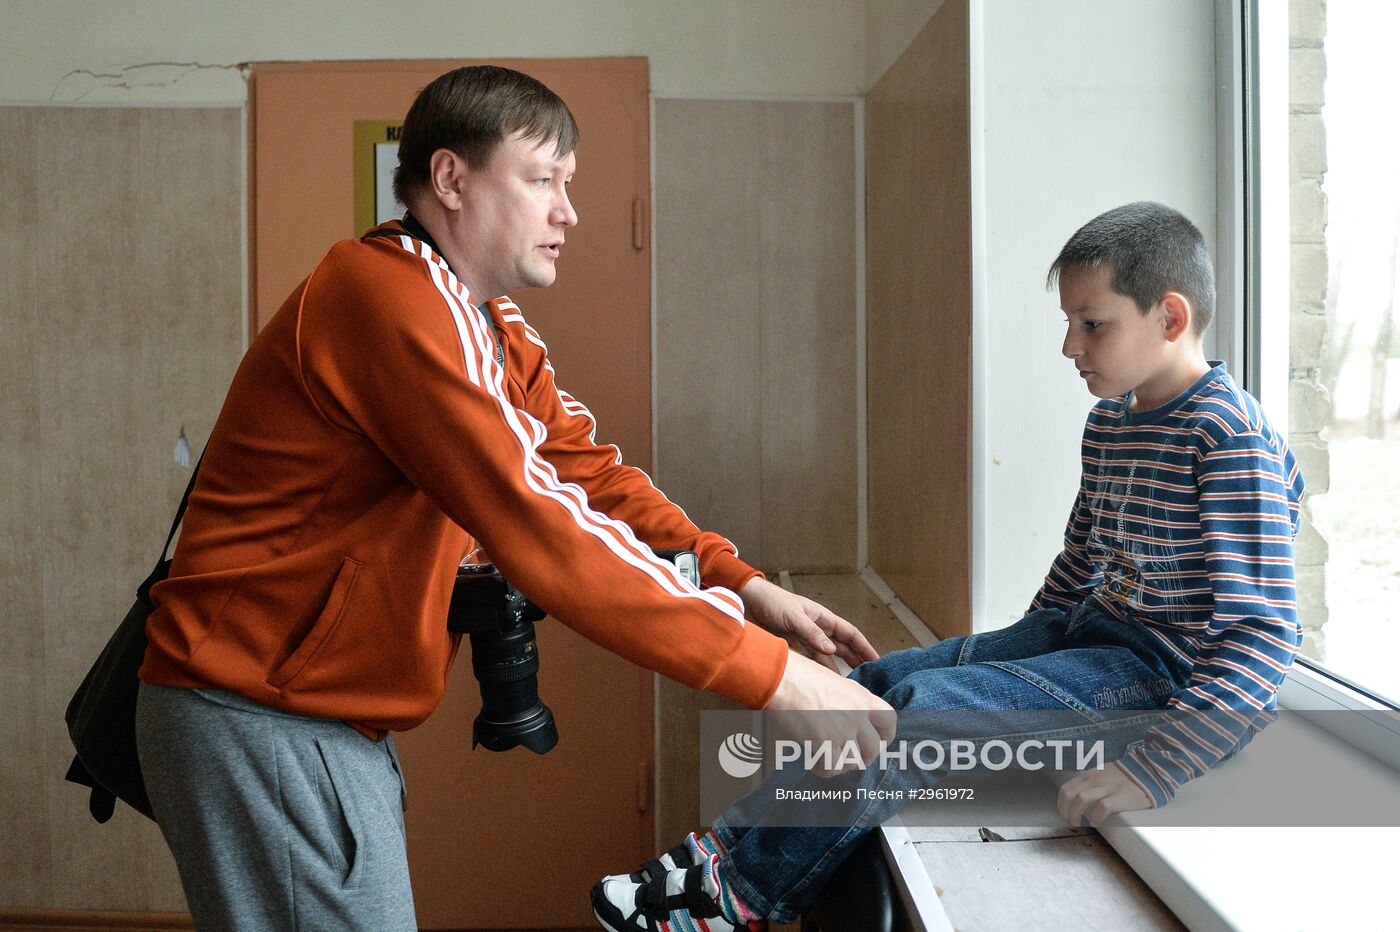 Программа по усыновлению детей "Поезд надежды" в Челябинской области